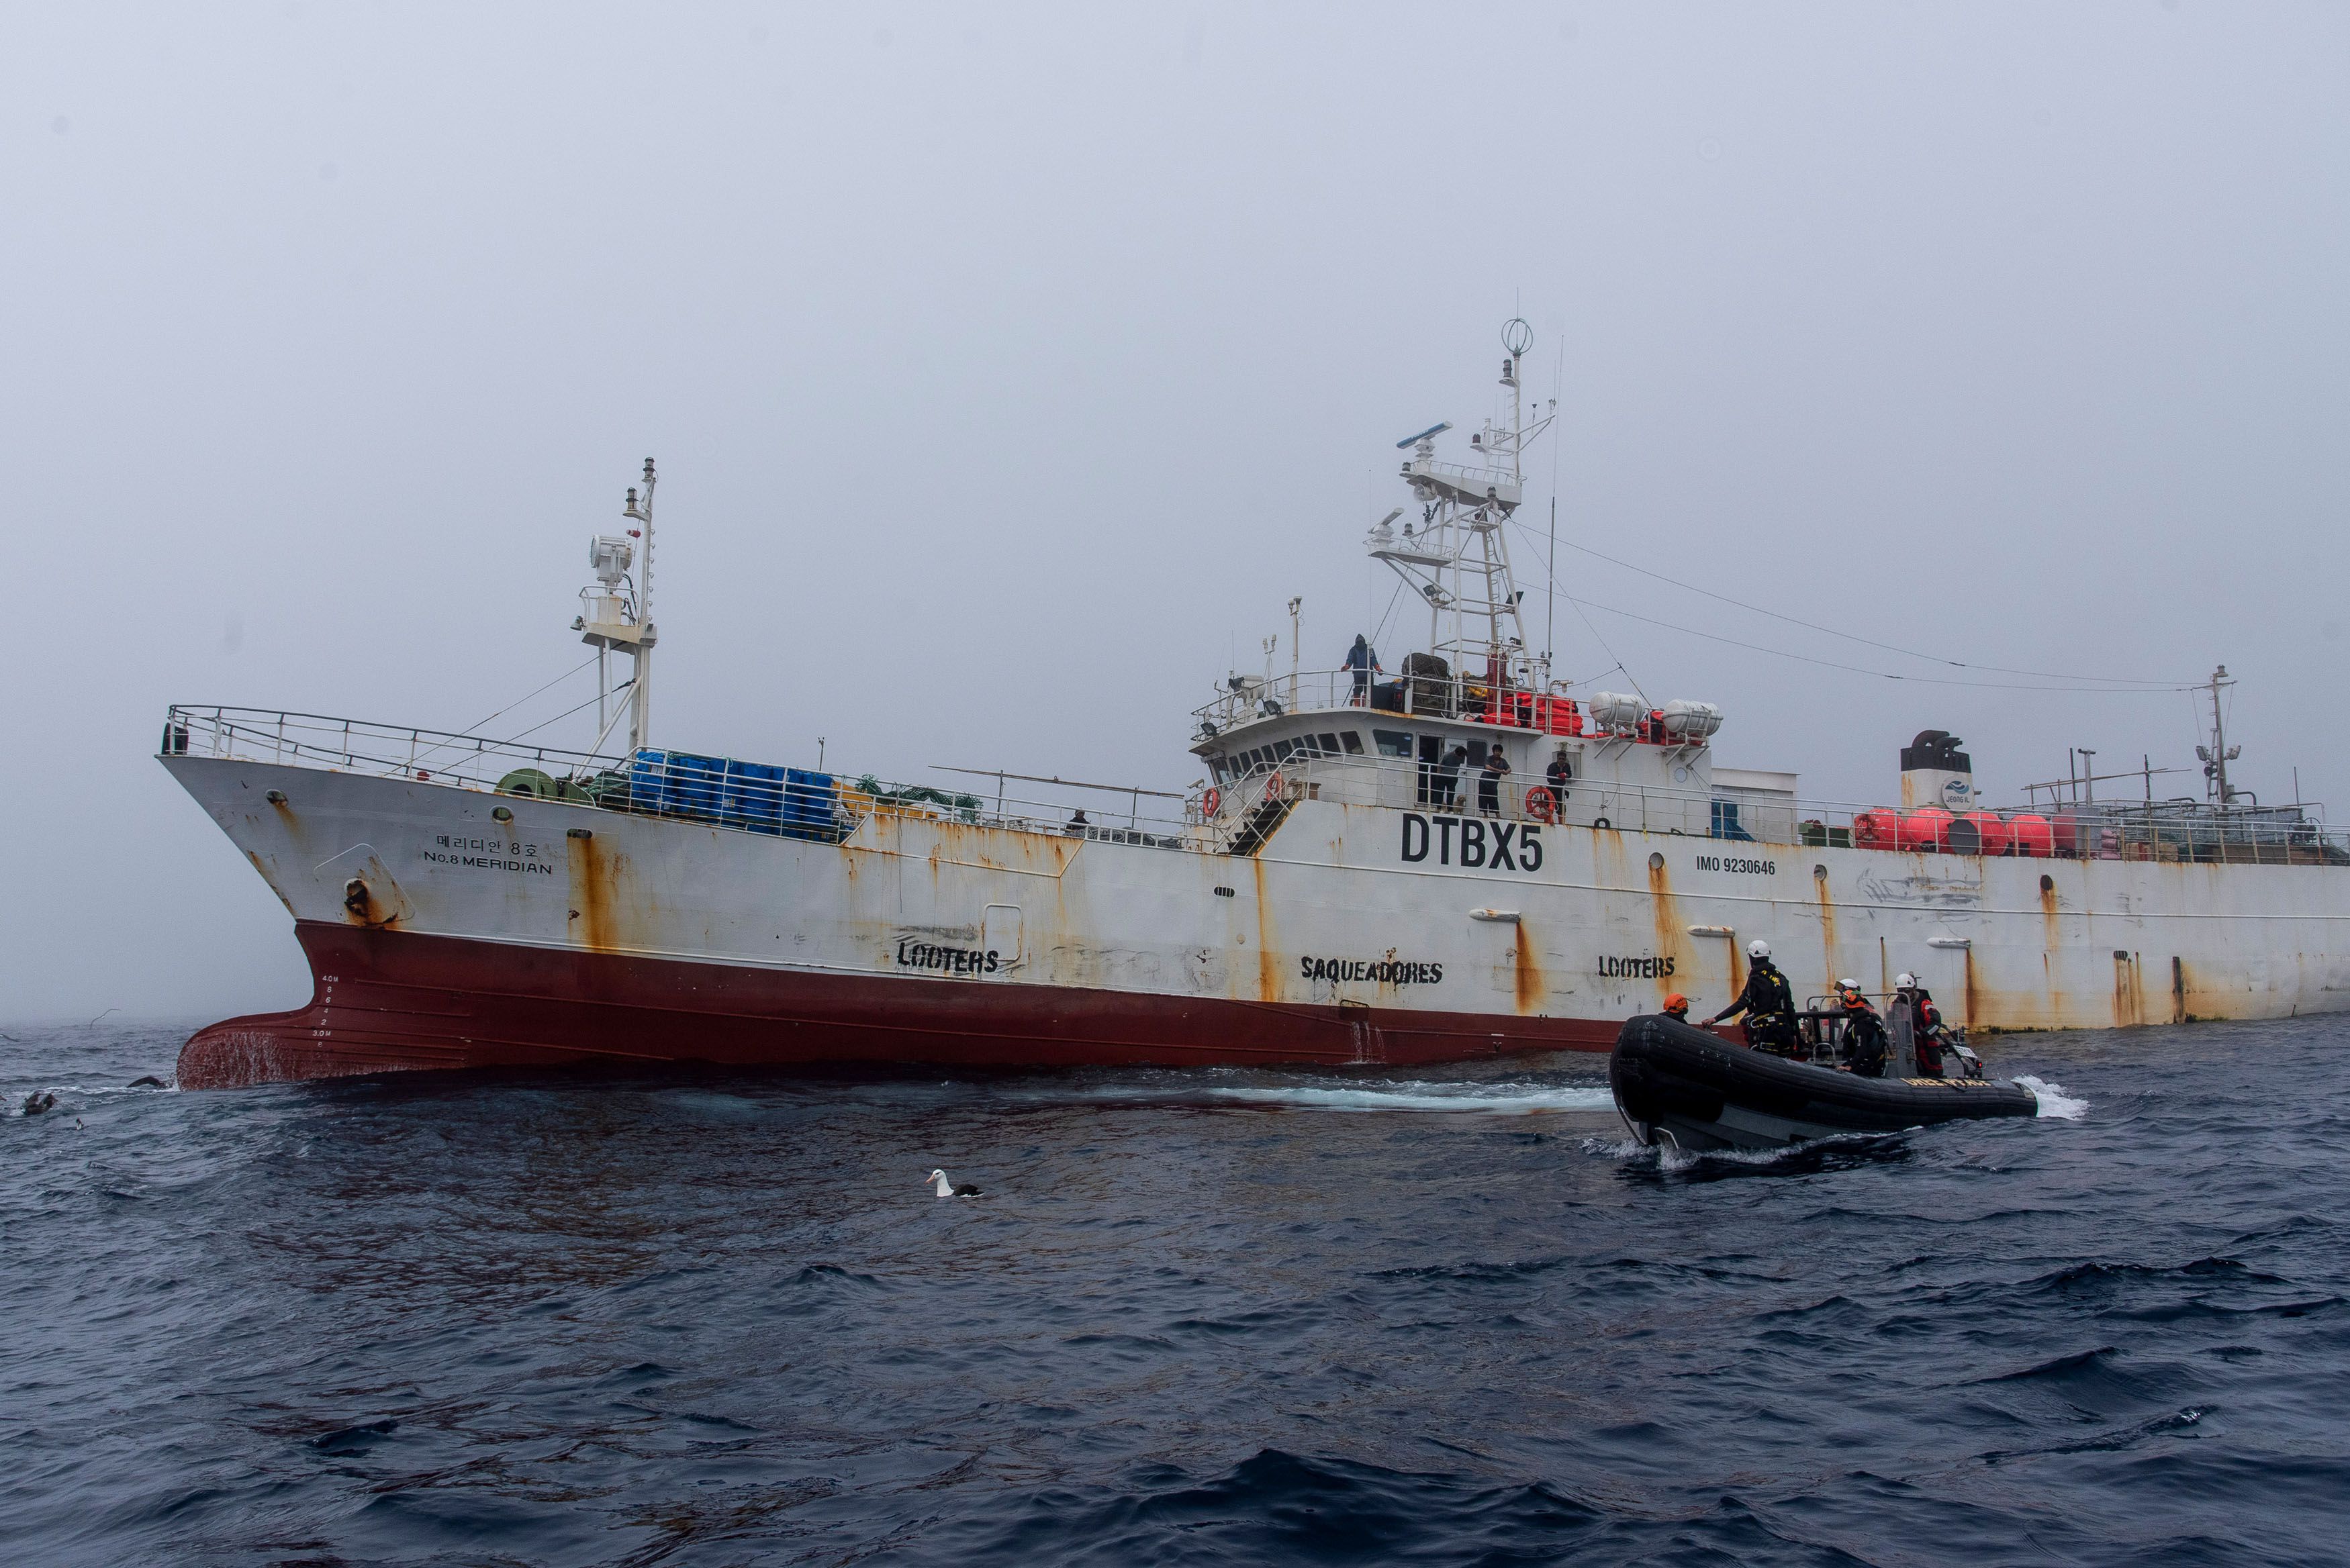 El momento en que uno de los dos gomones de Greenpeace se aproximó al Meridian N8. El pesquero surcoreano aceptó la protesta pacíficamente. Foto: Cristobal Olivares / Greenpeace